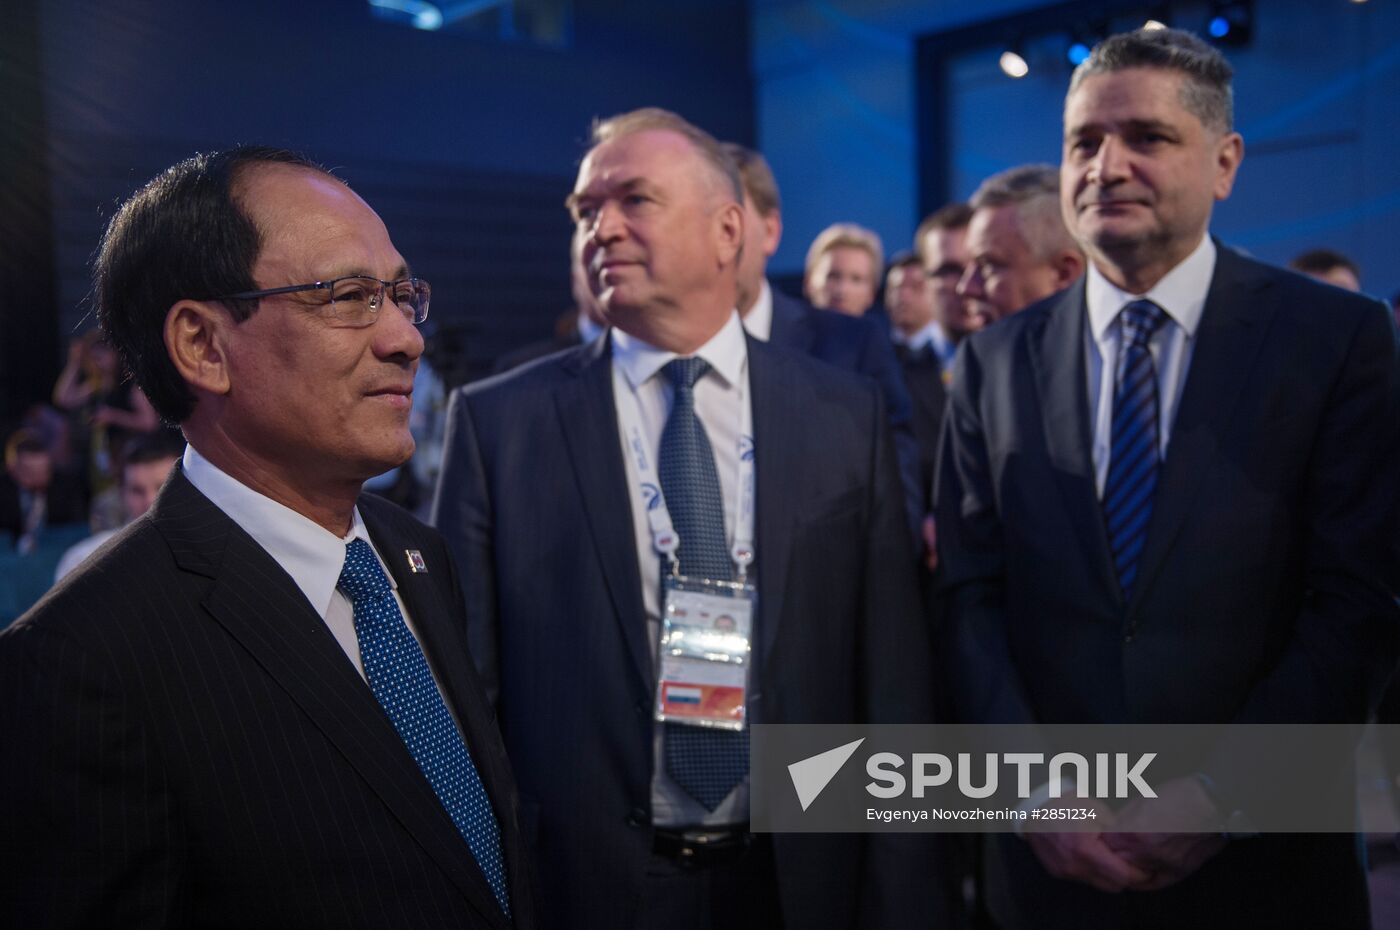 ASEAN-Russia Business Forum in Sochi